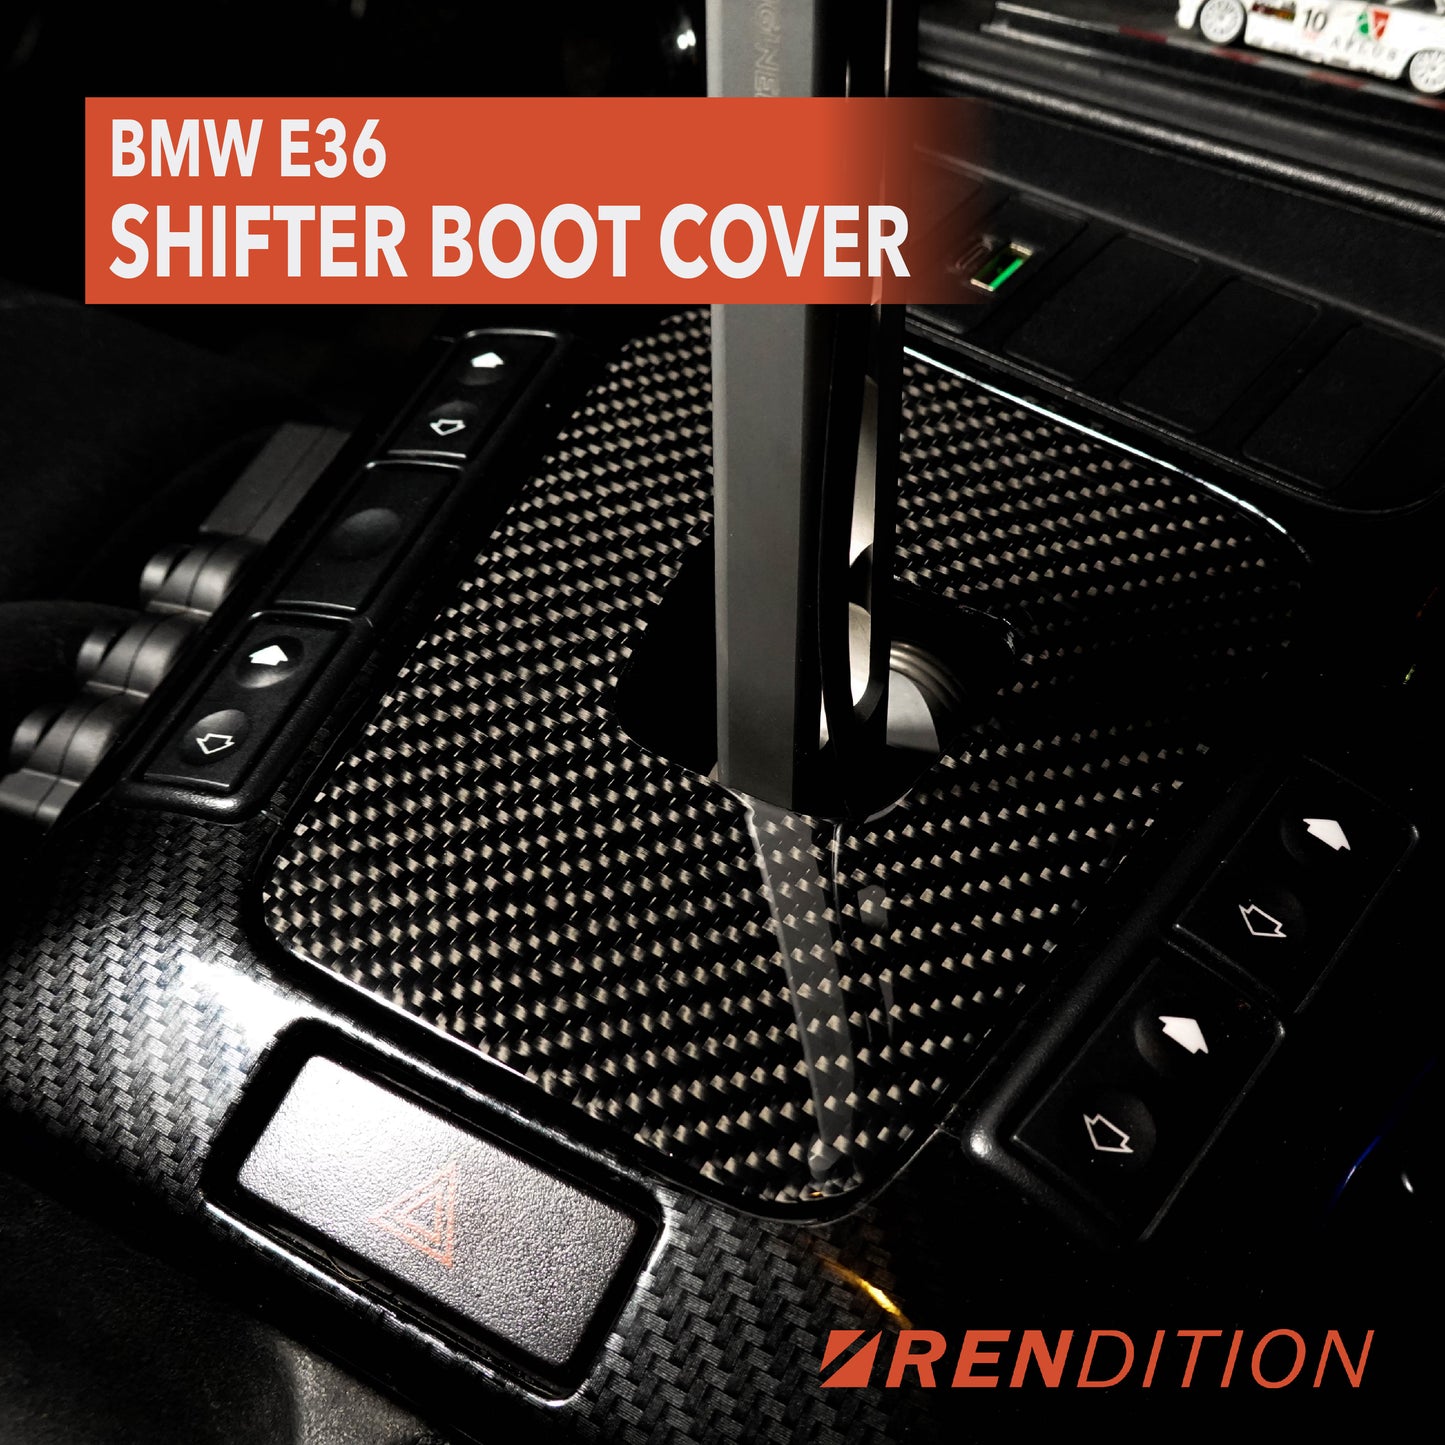 BMW E36 SHIFT BOOT COVER